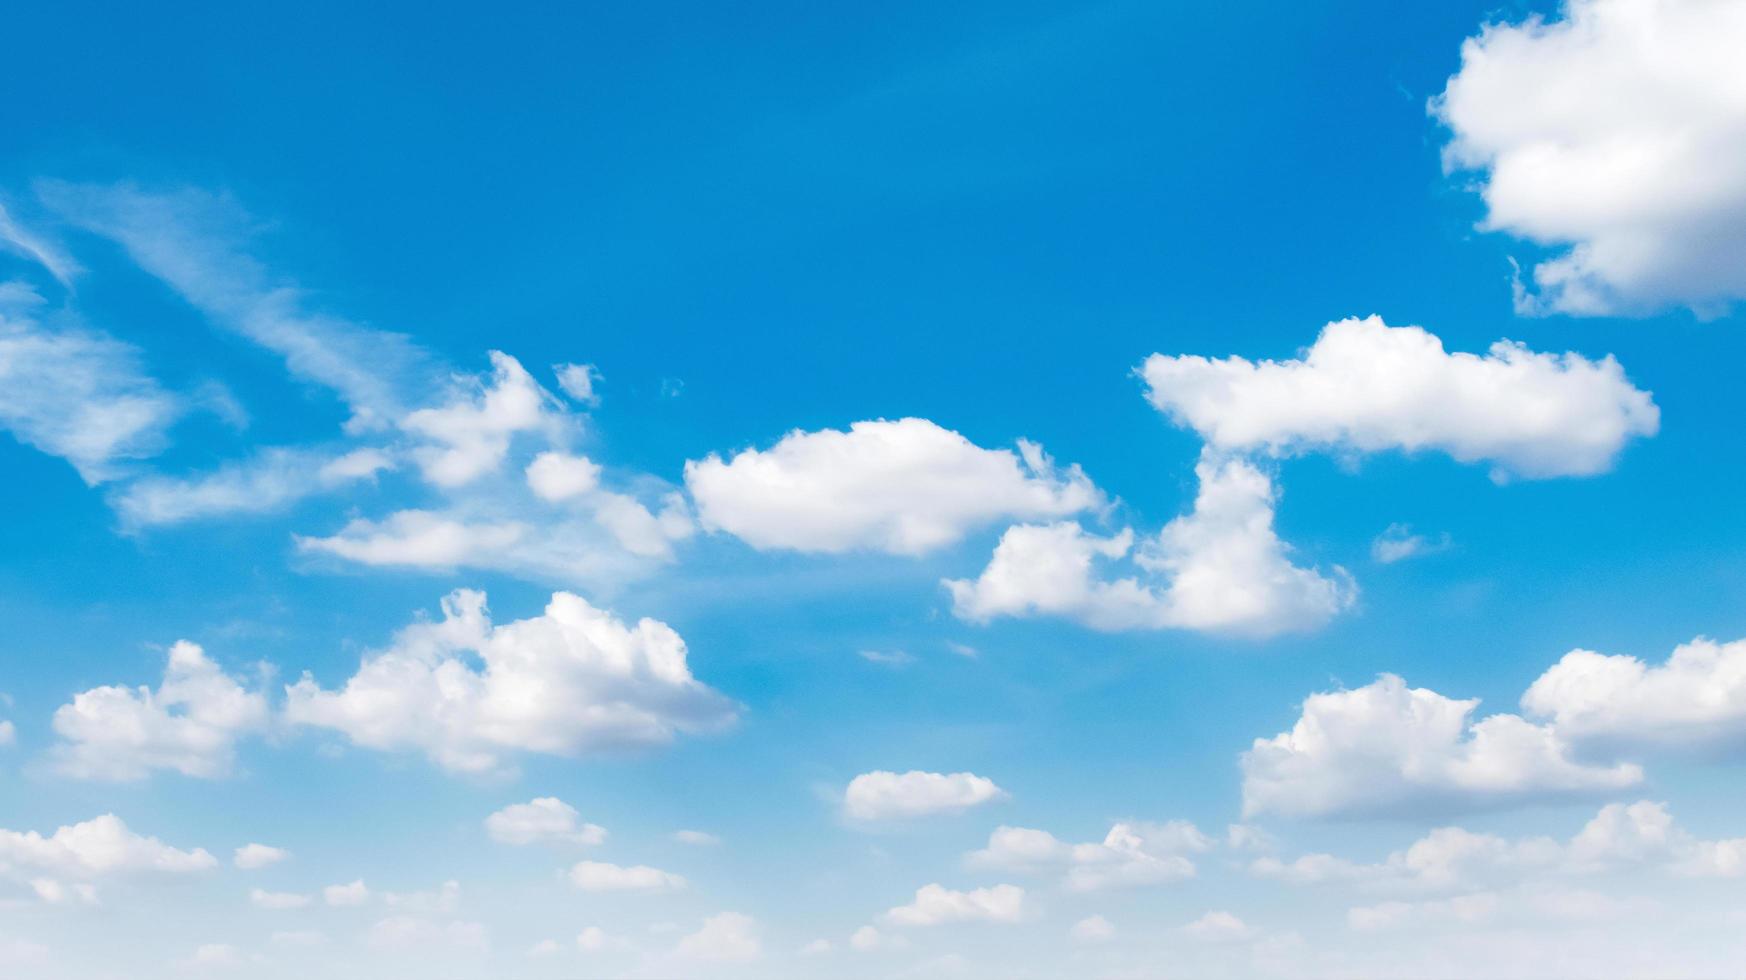 panorama blauwe hemel met wolken en zonneschijnachtergrond foto